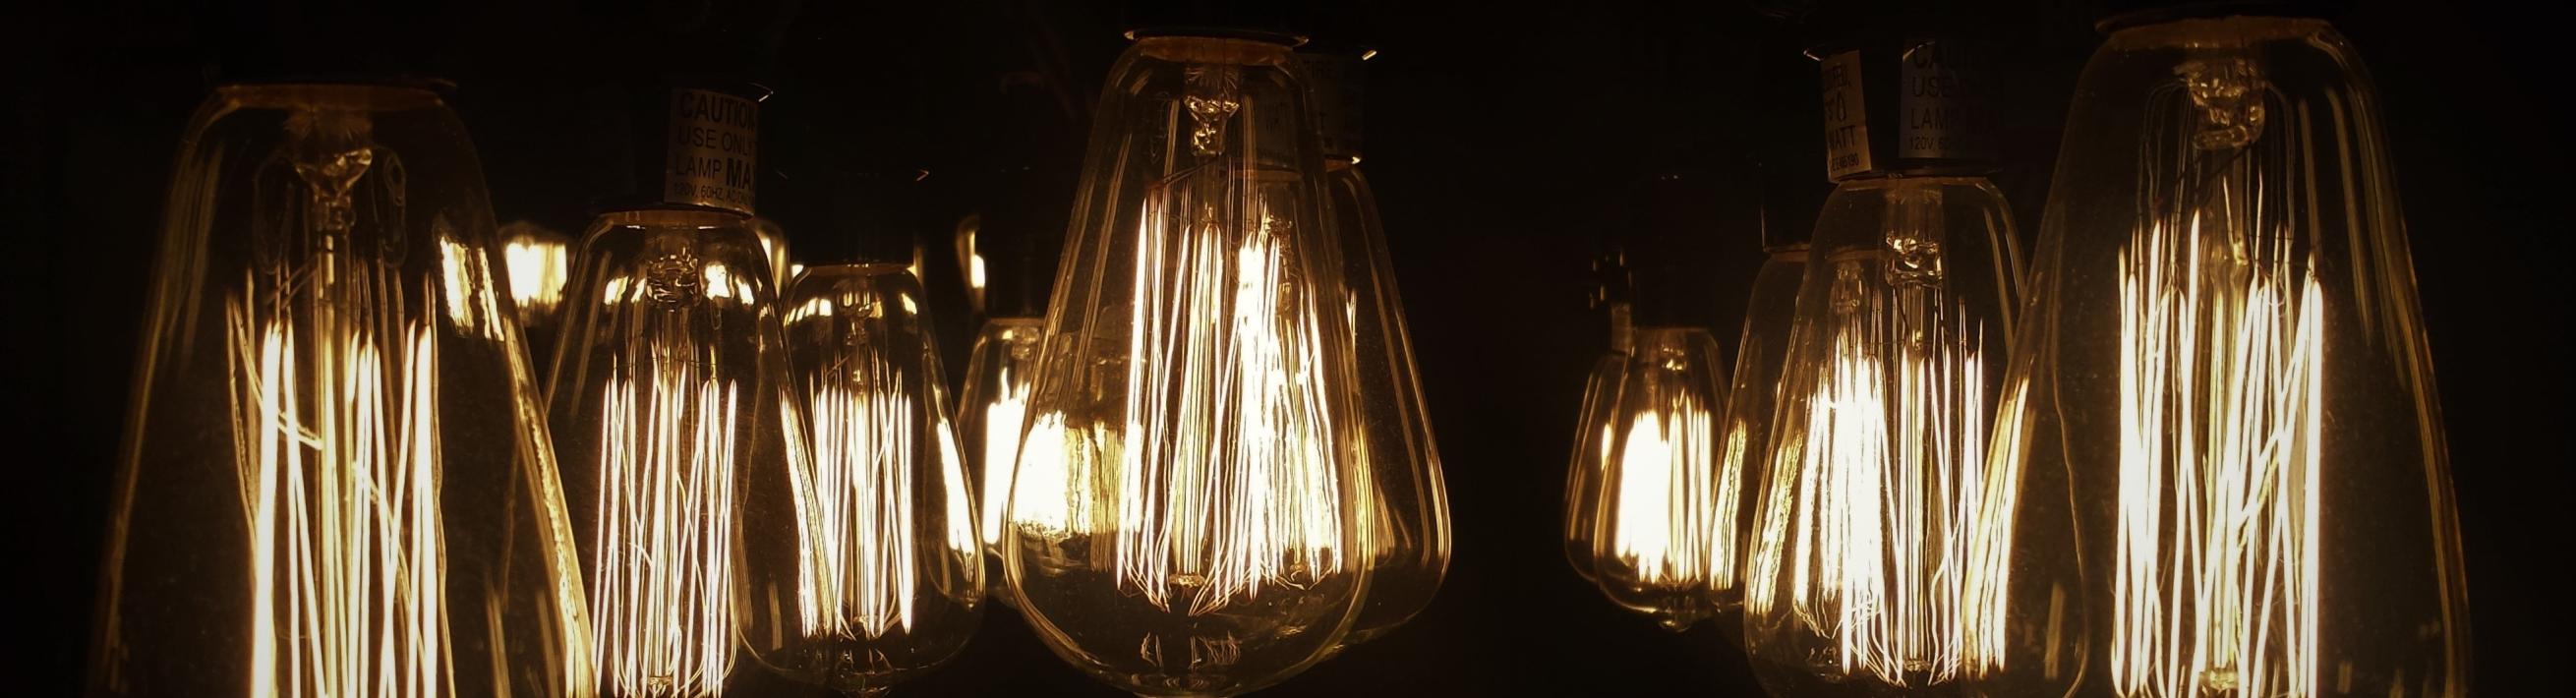 Light bulbs glowing in the dark